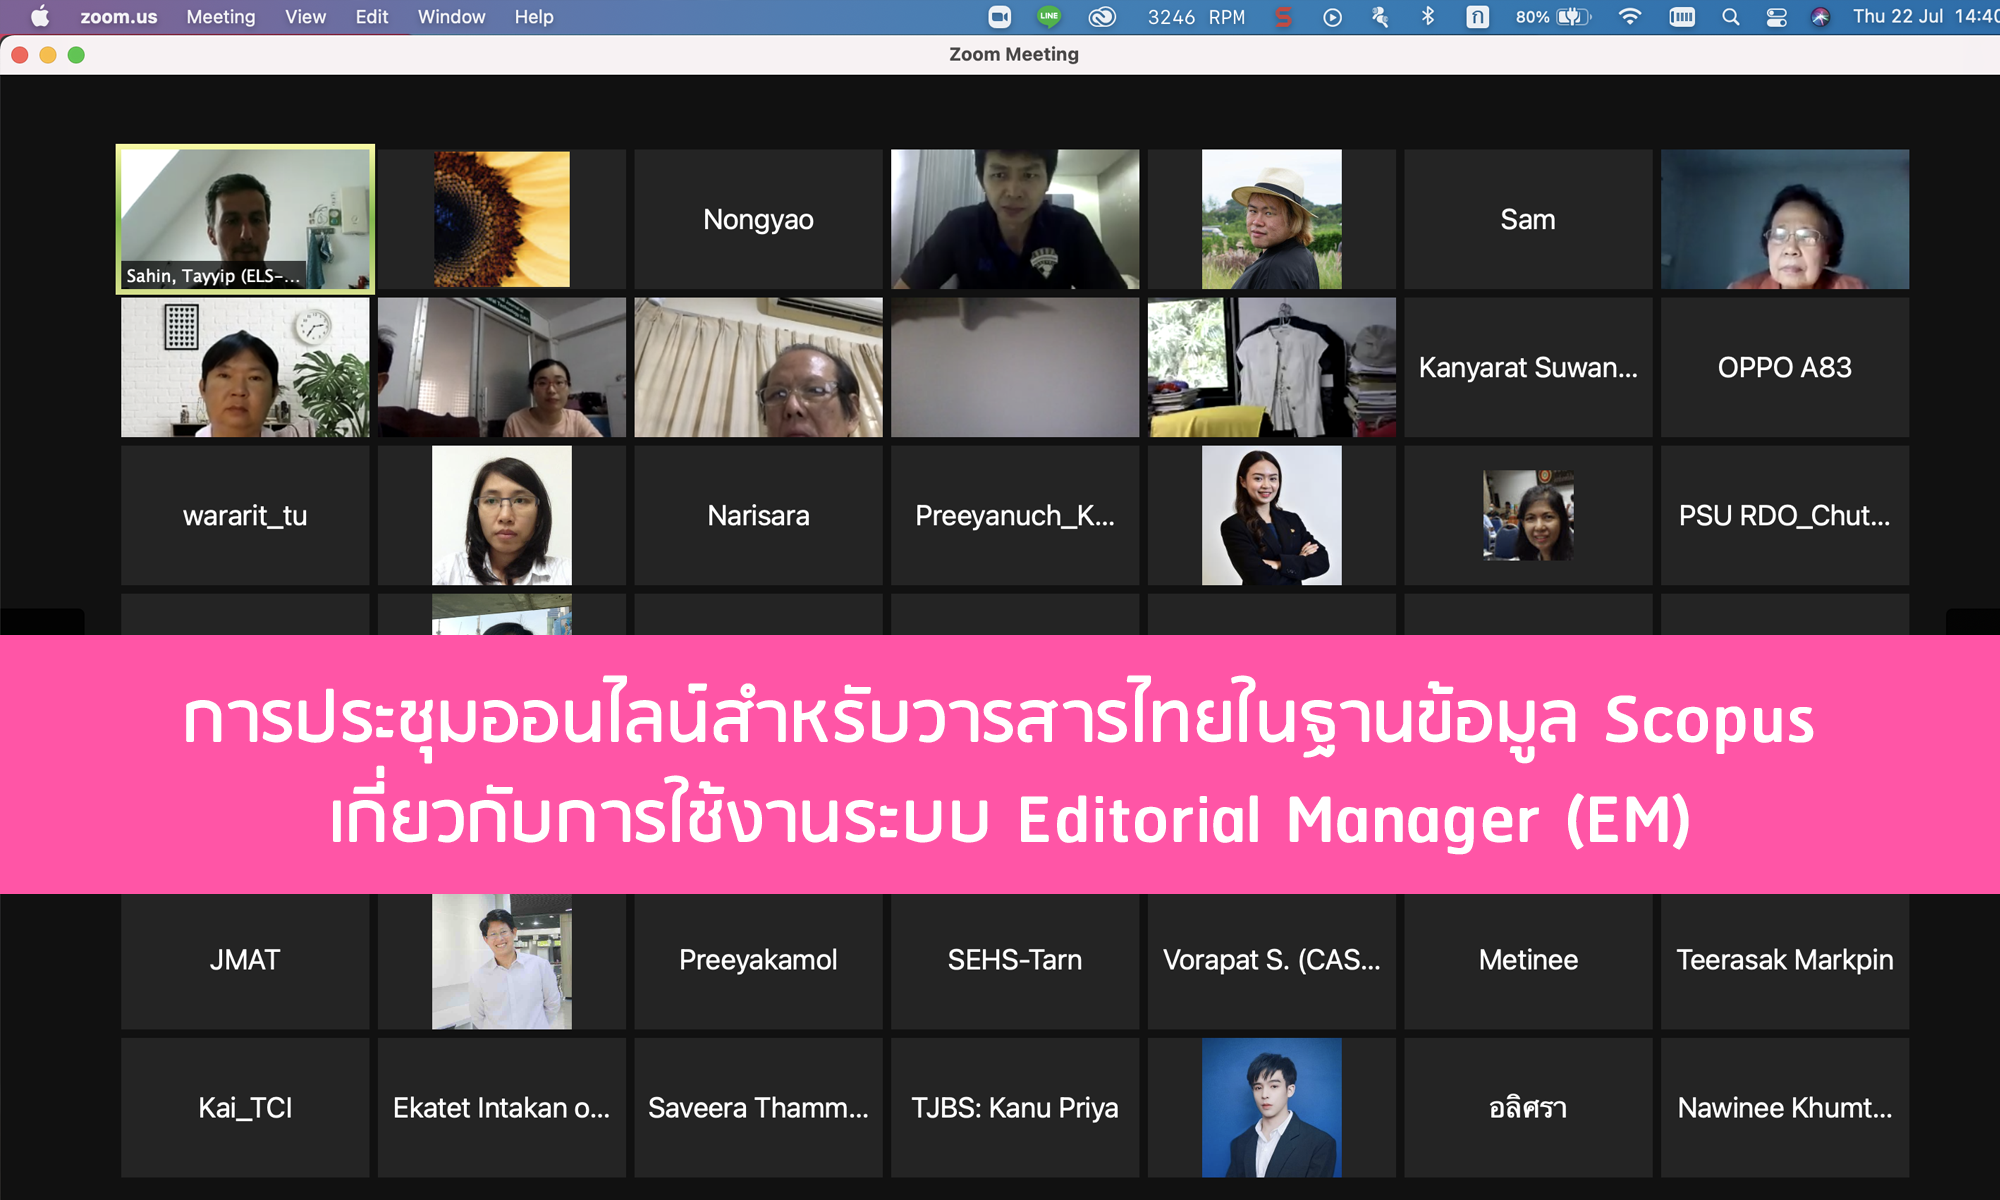 ข่าว  การประชุมออนไลน์สำหรับวารสารไทยในฐานข้อมูล Scopus เกี่ยวกับการใช้งานระบบ Editorial Manager (EM)